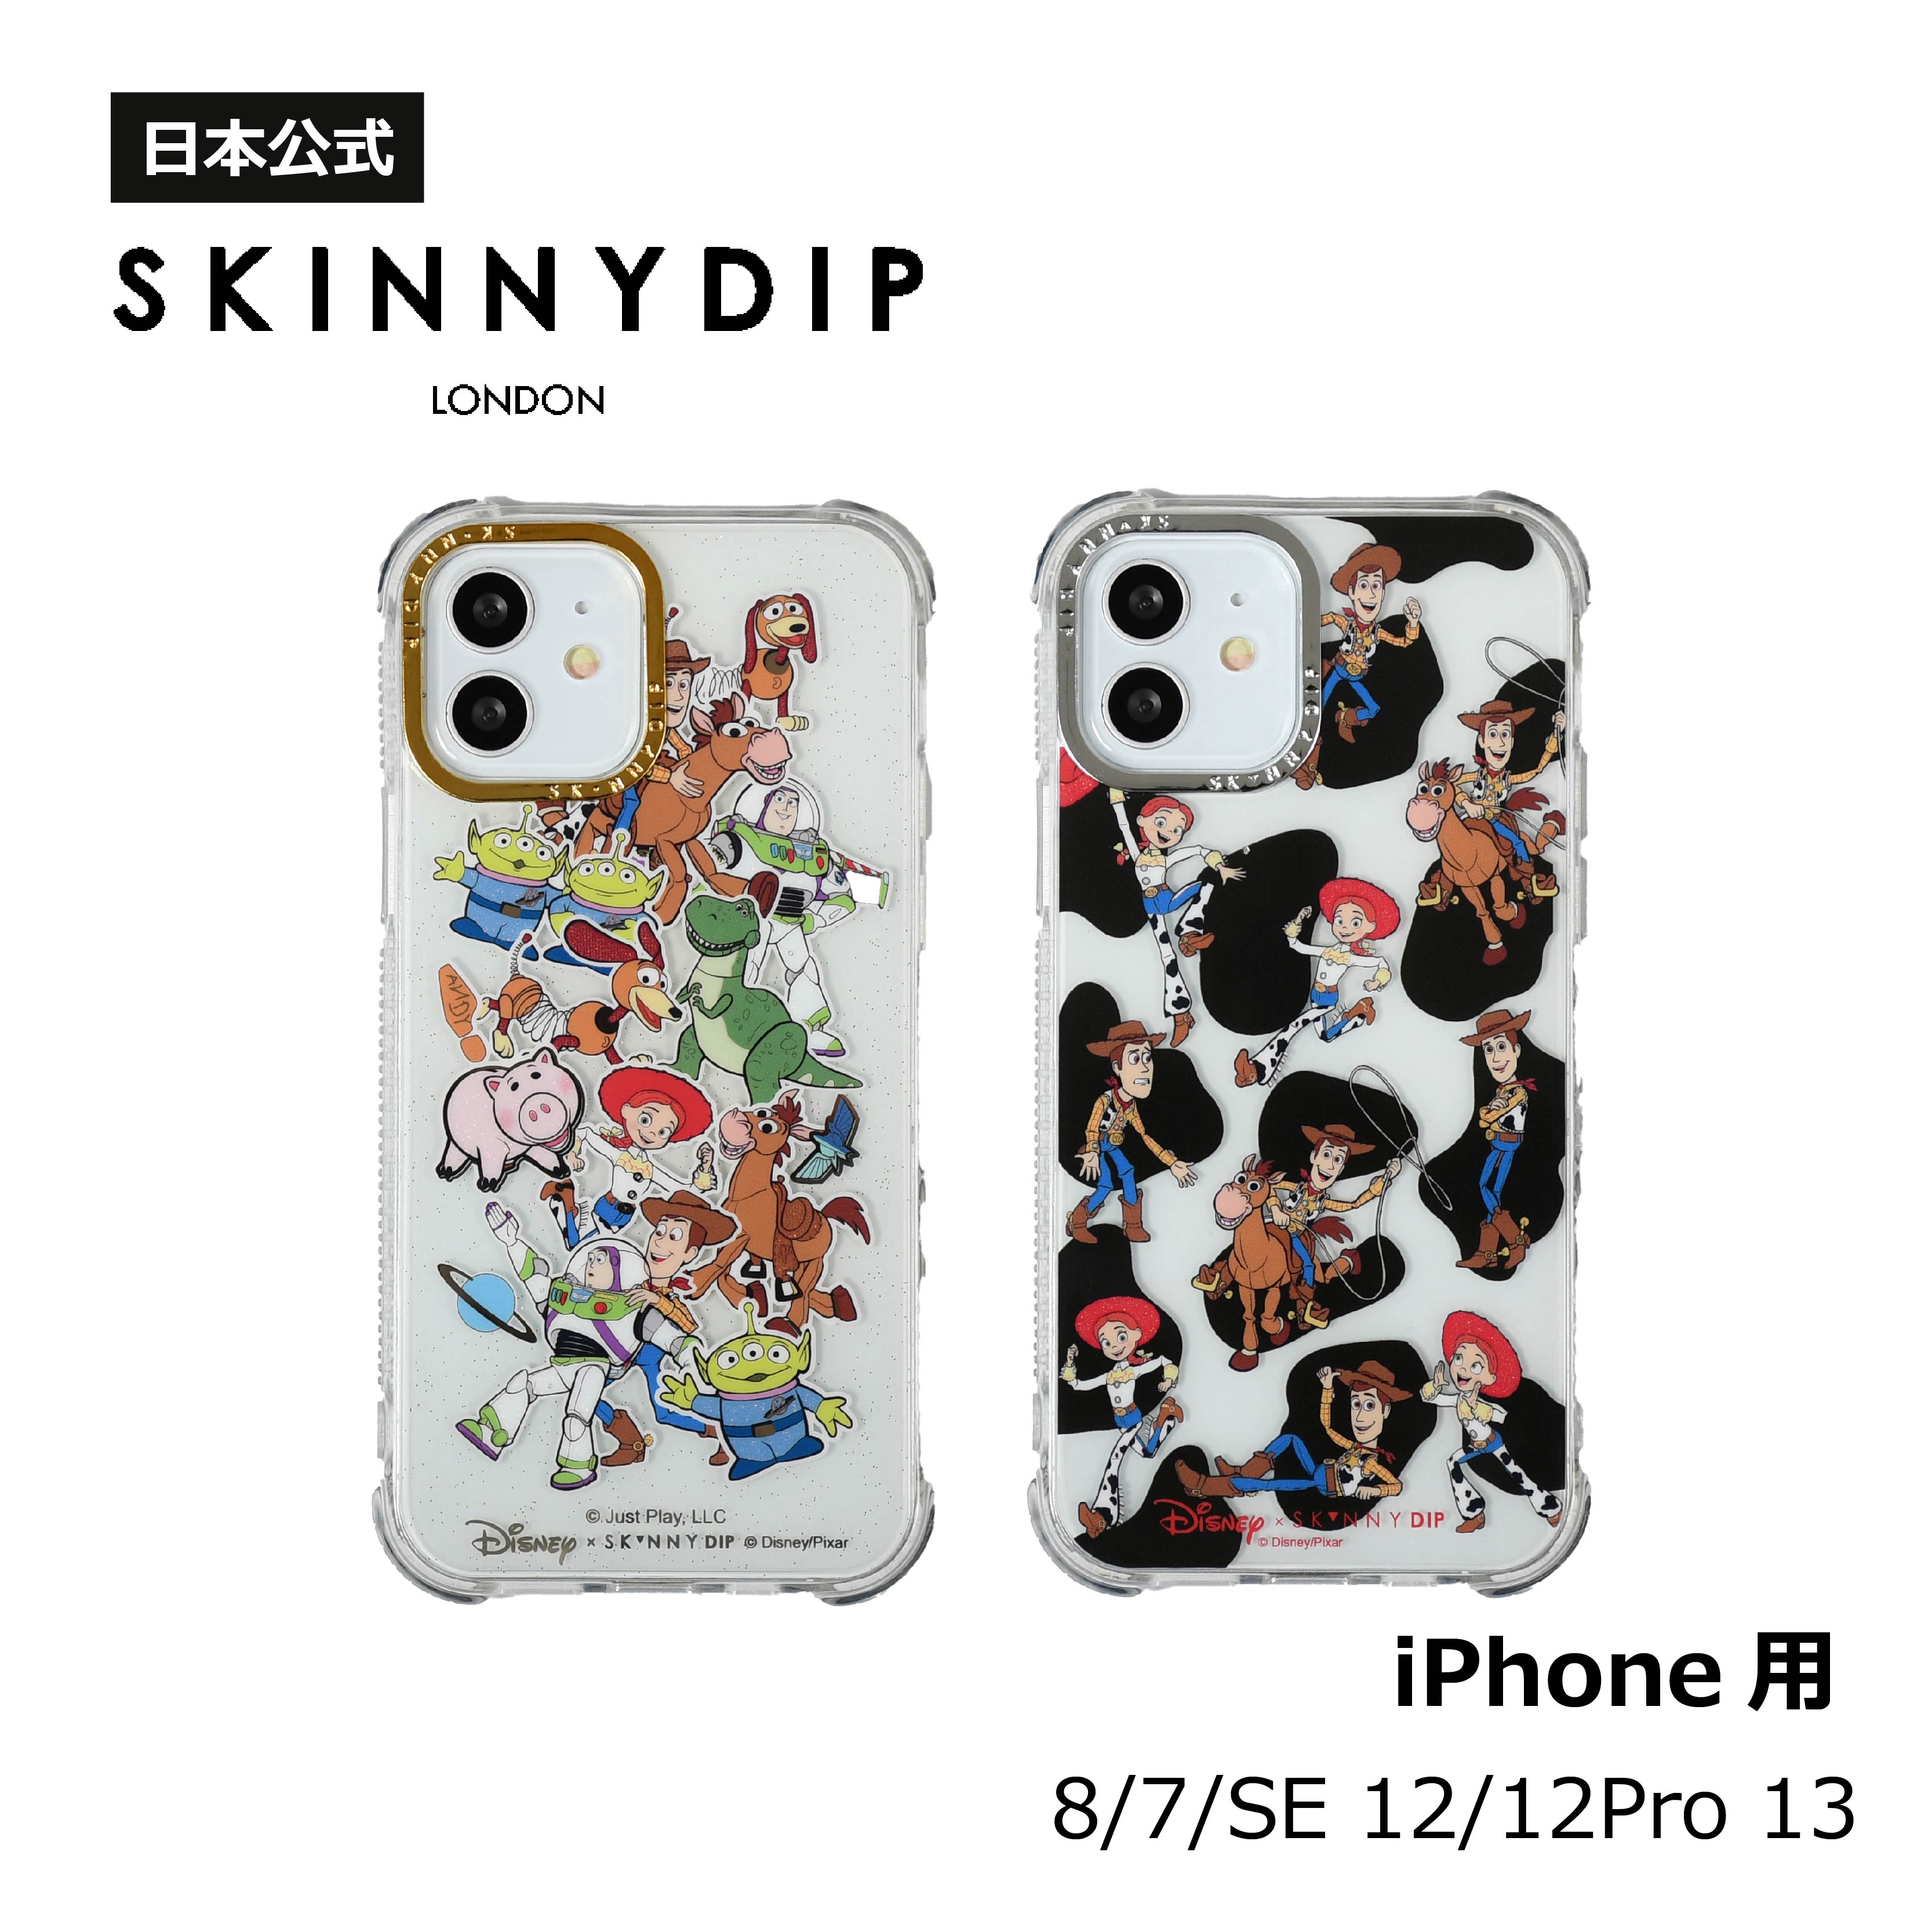 【公式】SKINNYDIP iPhone用 ケース Disney トイストーリー ウッディ ジェシー iPhone8/7/SE iPhone11Pro/X/XS iPhone12/12Pro ディズニーコラボ 耐衝撃性ケース